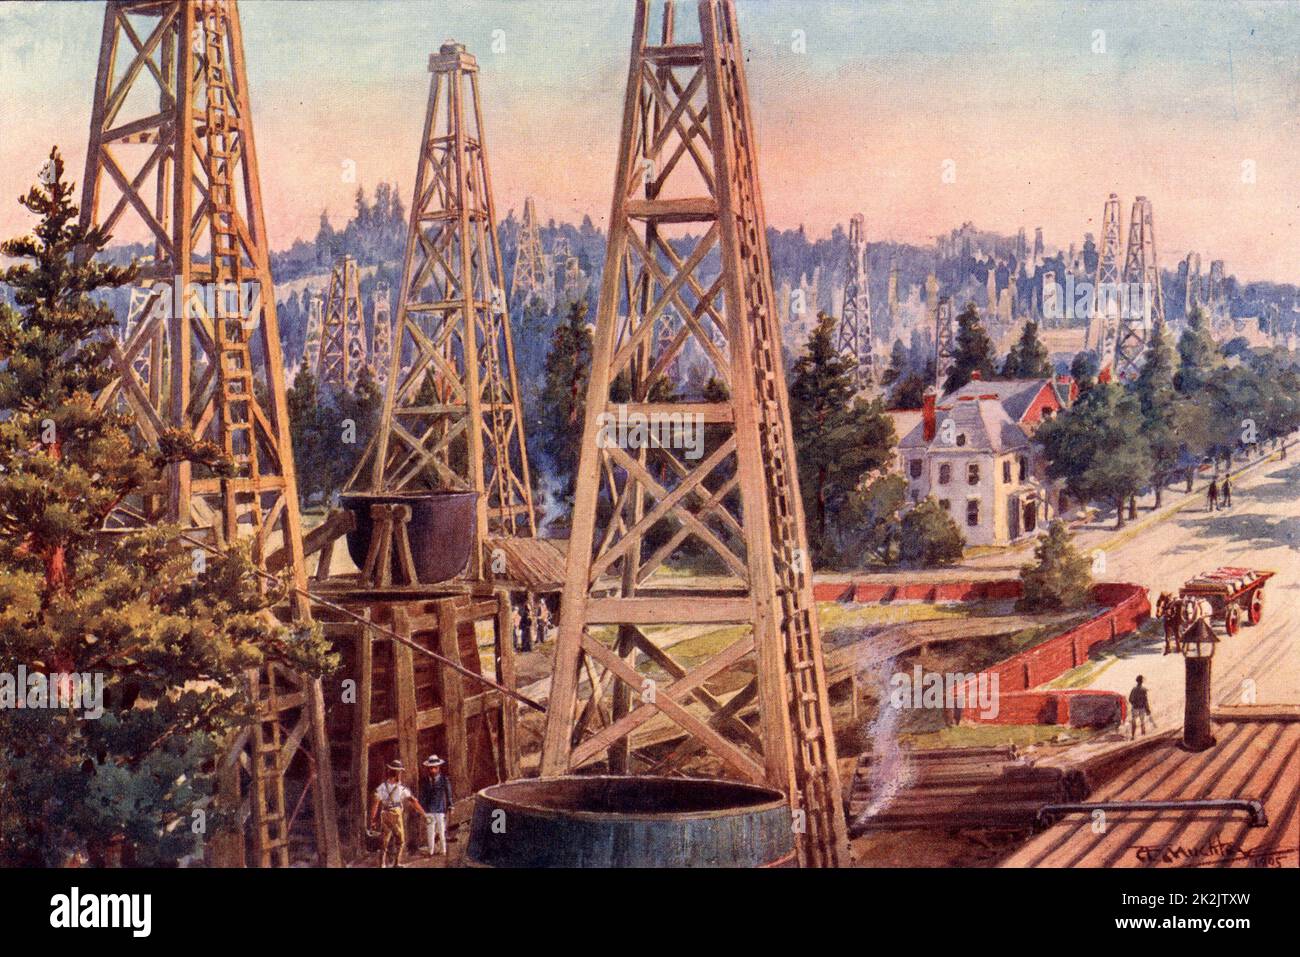 La regione petrolifera di Los Angeles, California, usa. Derrick di petrolio in quella che era stata una zona residenziale di Los Angeles. Da 'The Practical Grocer' (Londra, 1905). Mezzitoni. Foto Stock